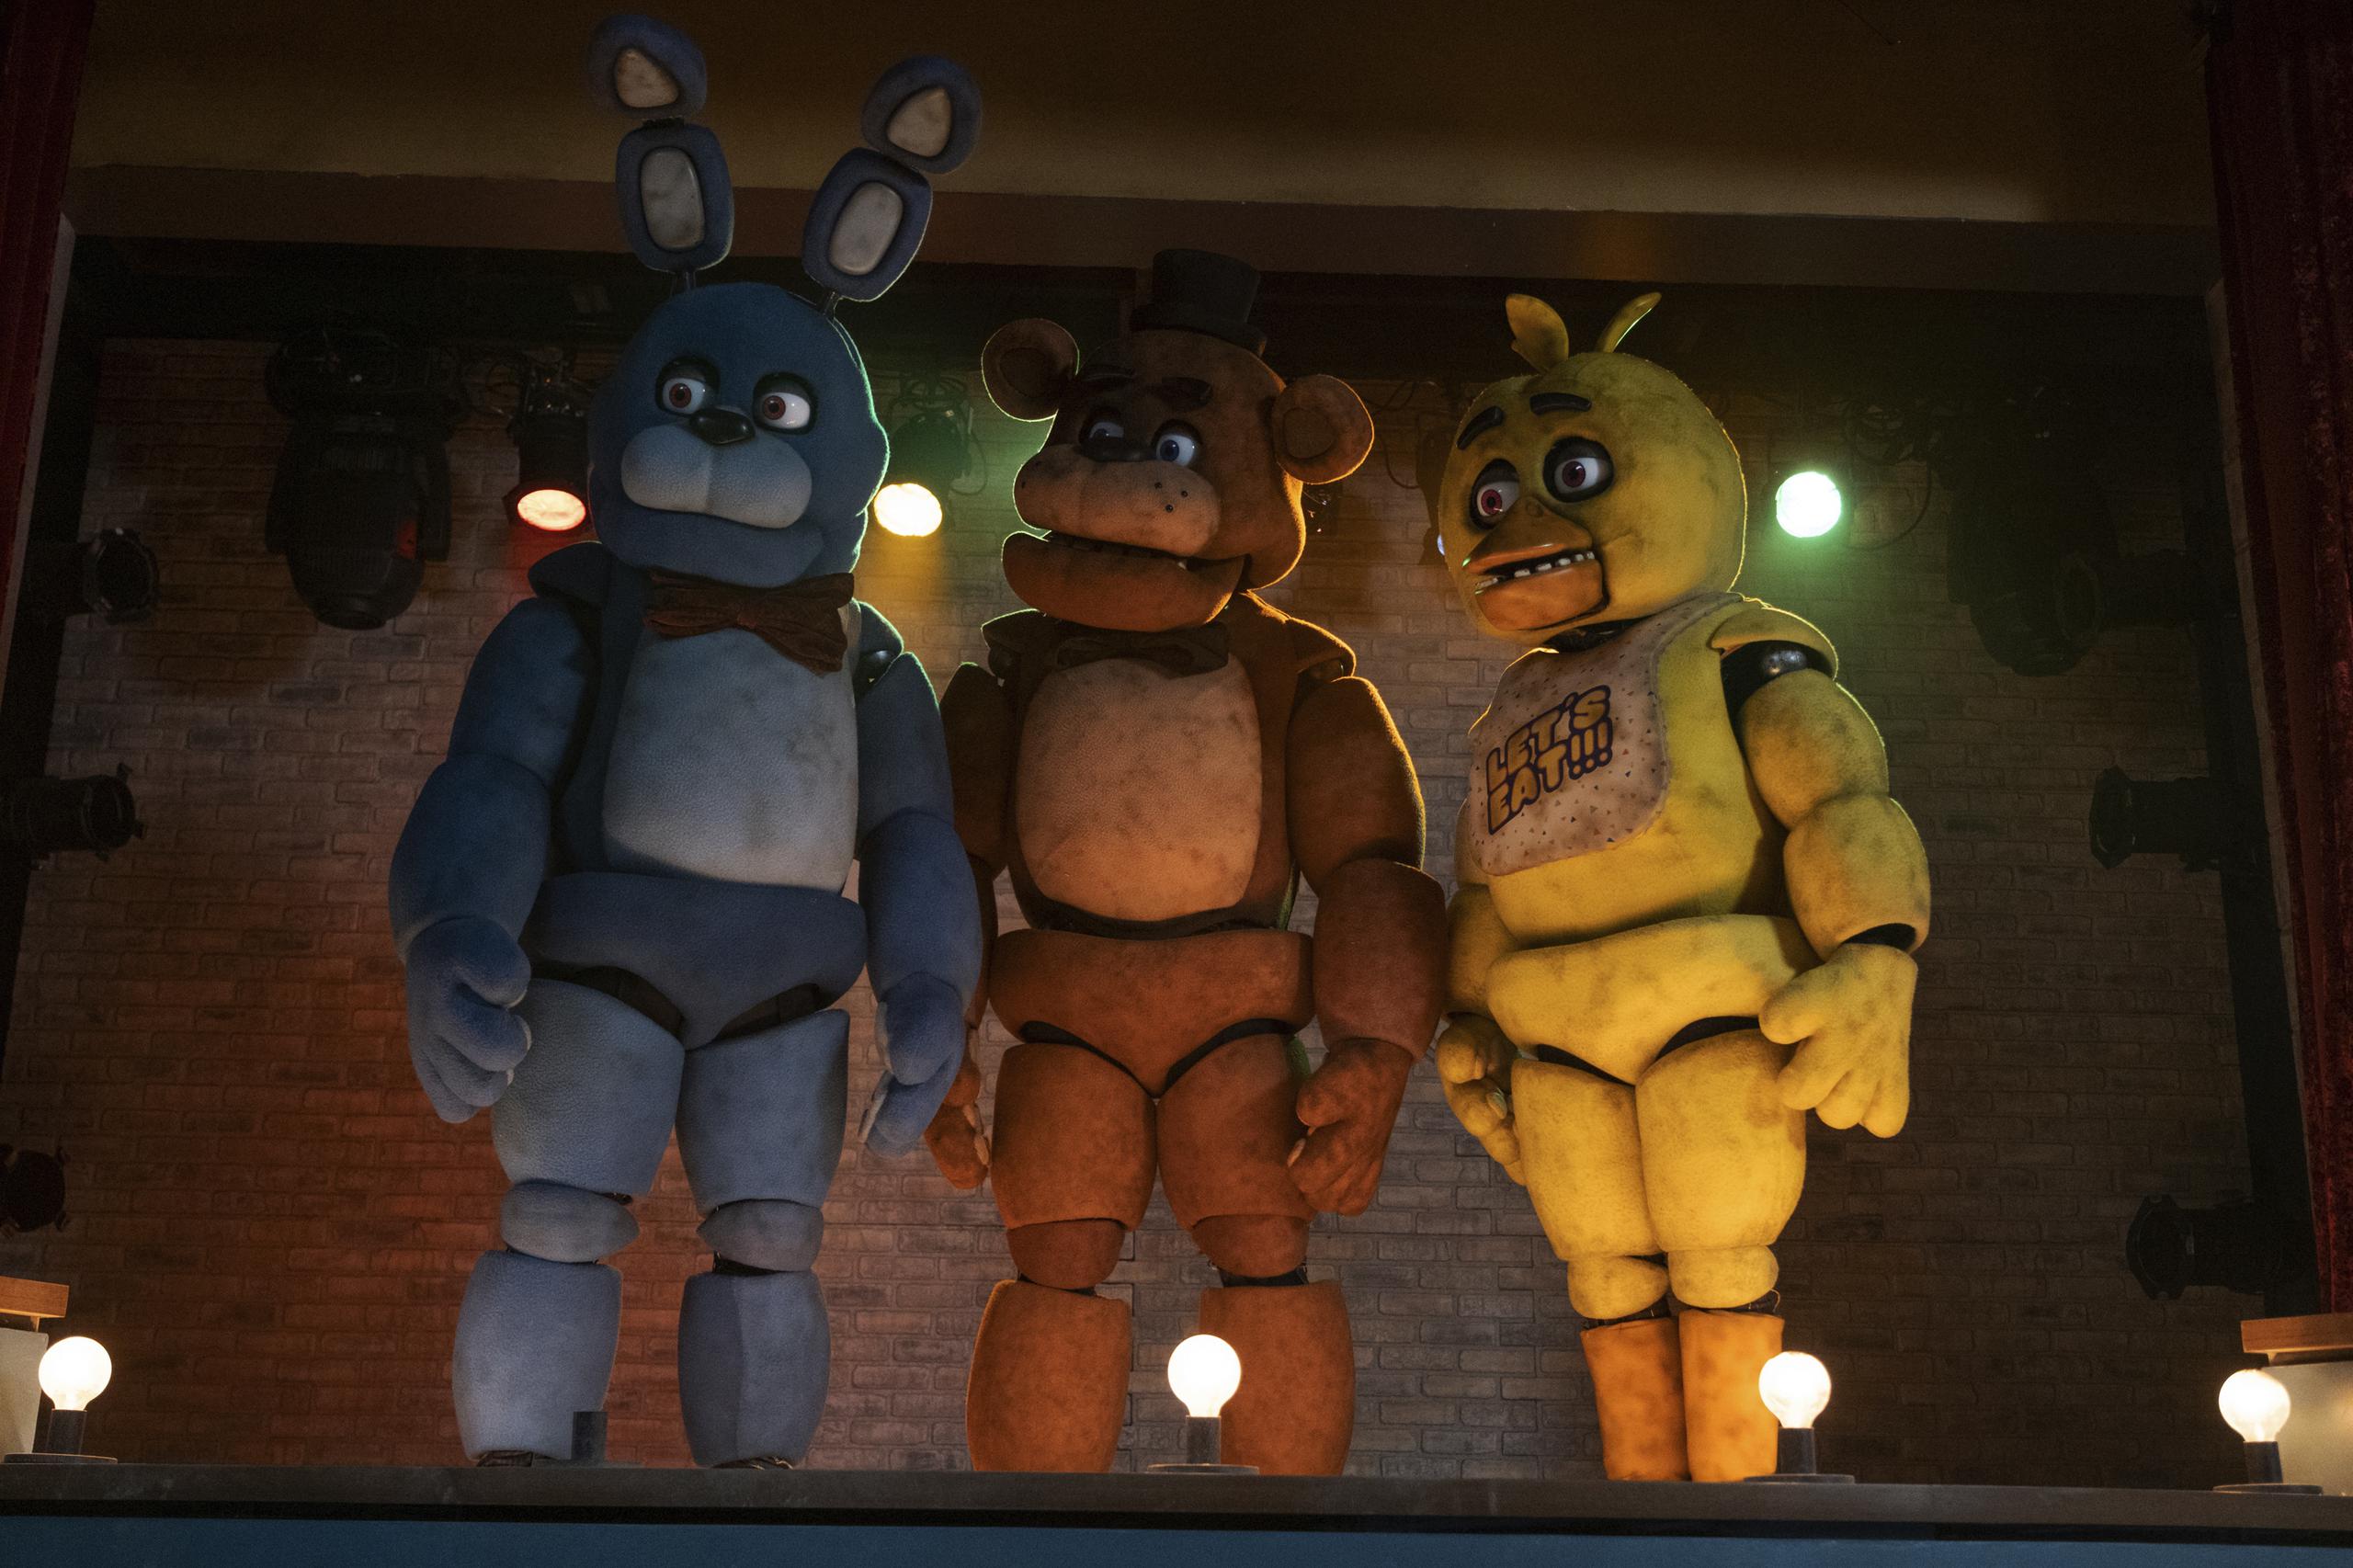 De izquierda a derecha, los personajes Bonnie, Freddy Fazbear y Chica en una escena de "Five Nights at Freddy's".